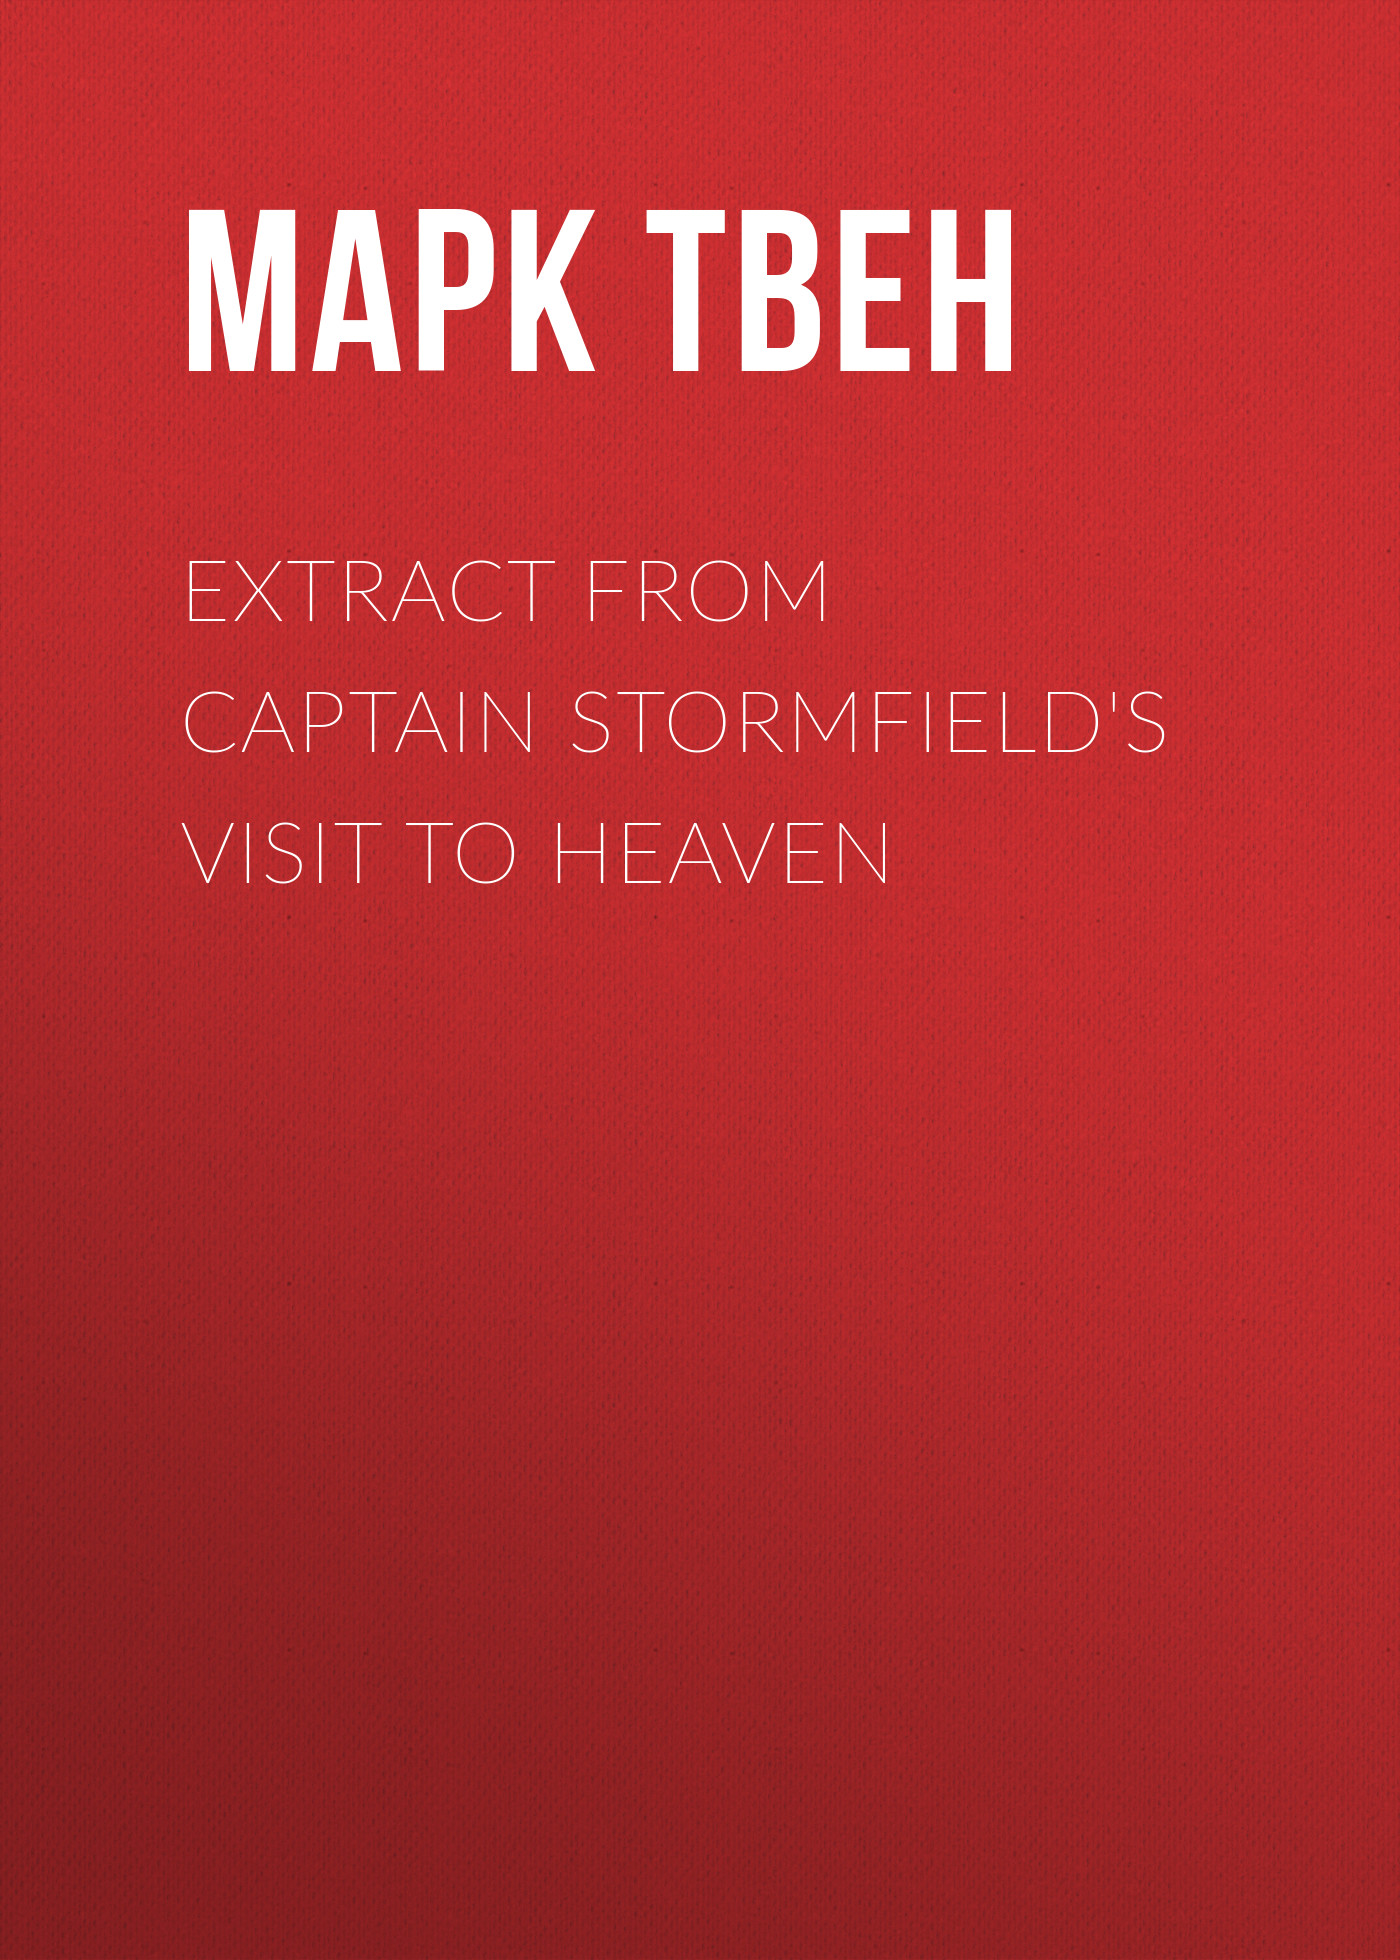 Книга Extract from Captain Stormfield's Visit to Heaven из серии , созданная Марк Твен, может относится к жанру Зарубежная старинная литература, Зарубежная классика. Стоимость электронной книги Extract from Captain Stormfield's Visit to Heaven с идентификатором 25474415 составляет 0 руб.